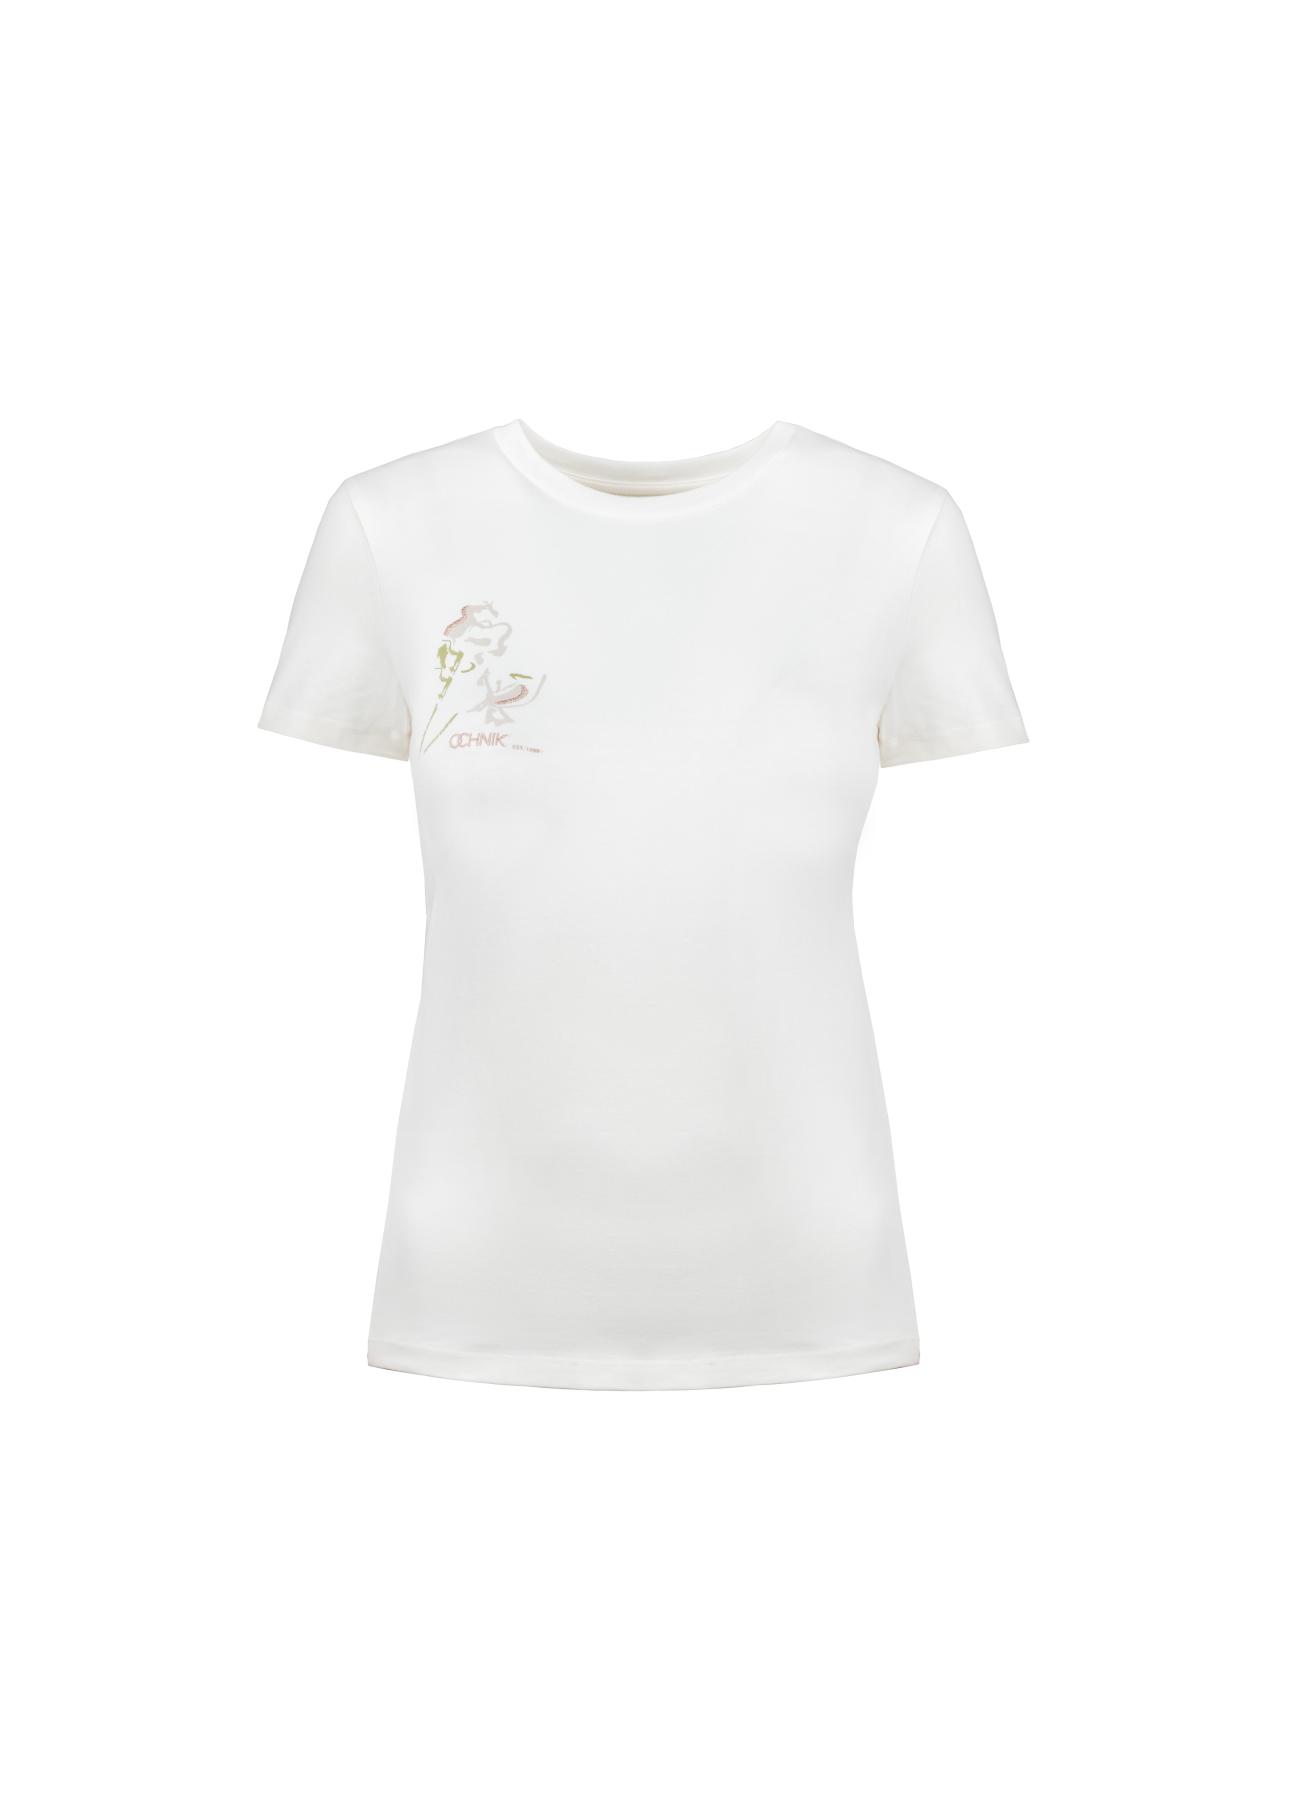 Kremowy T-shirt damski z aplikacją TSHDT-0082-11(Z21)-01